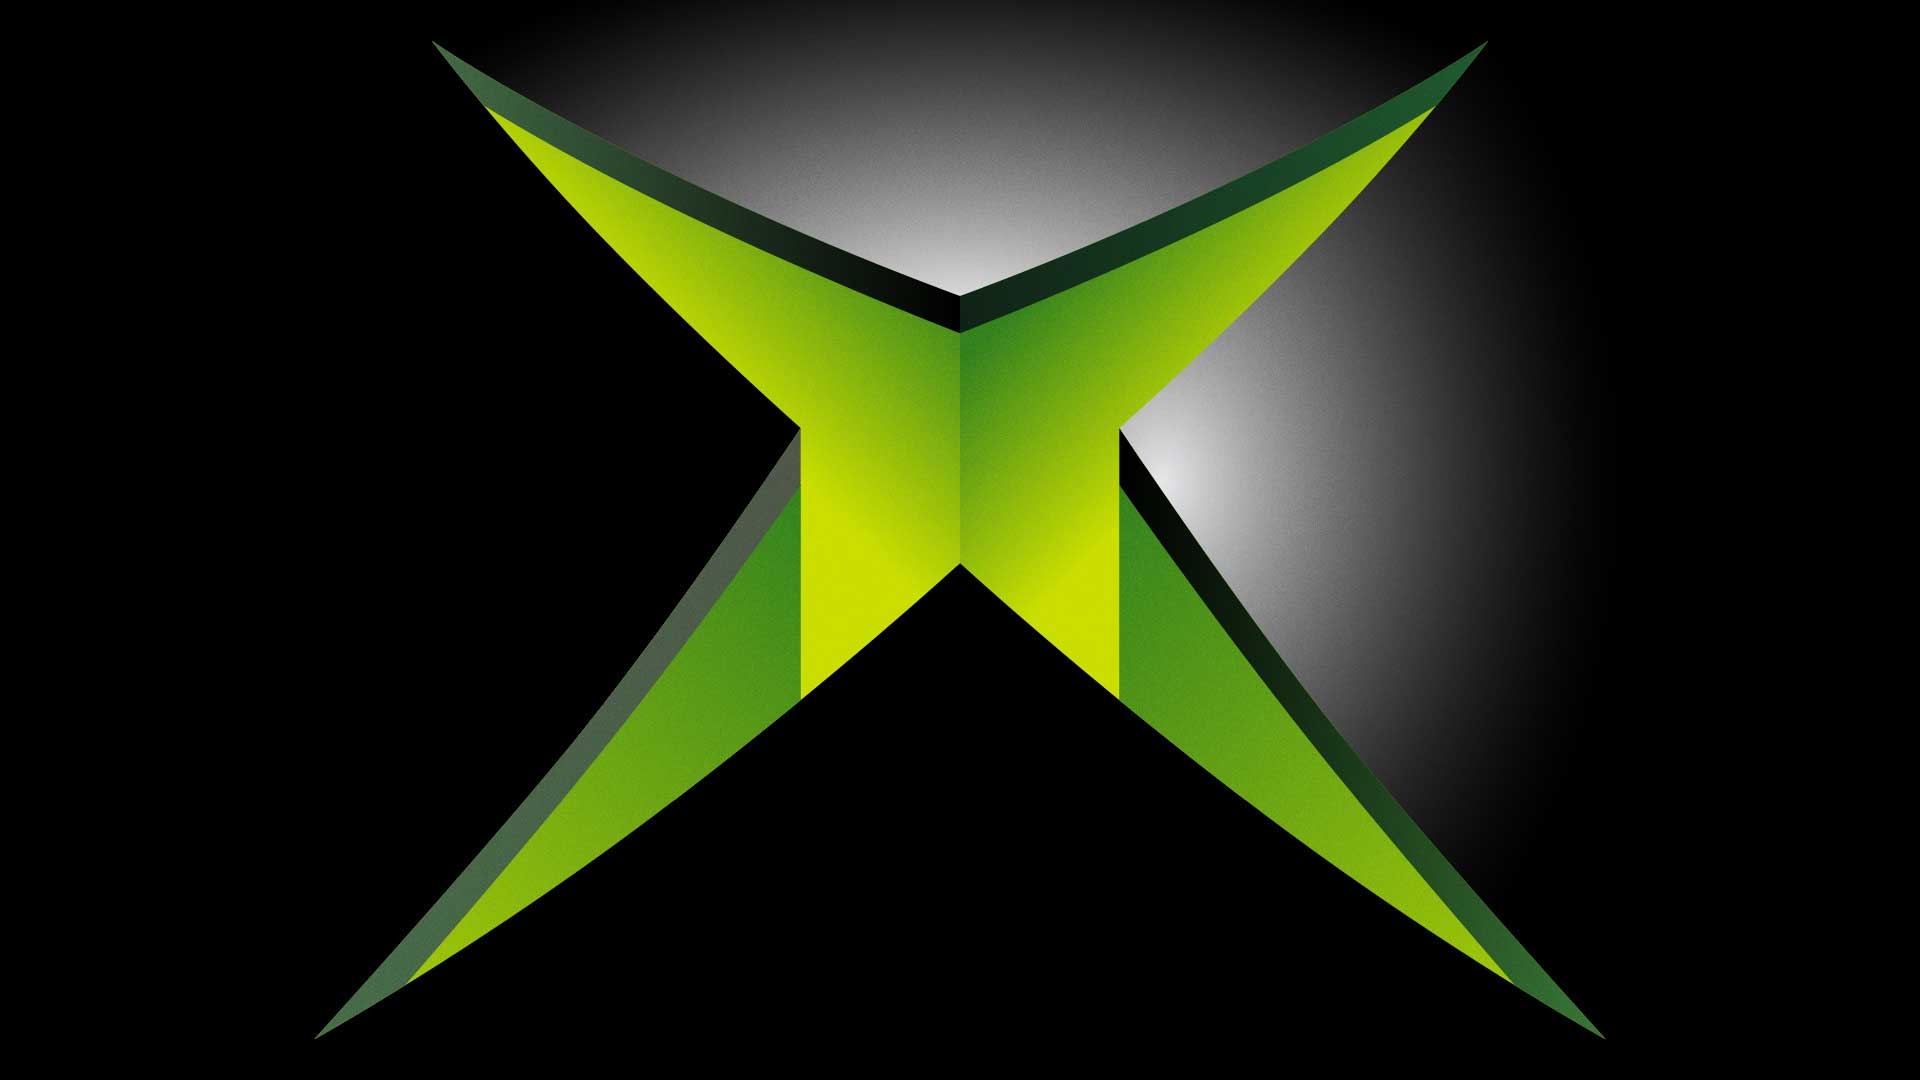 لوگو ایکس باکس قدیمی نسل ۶ مایکروسافت با رنگ سبز ایکس وسط گوی مشکی